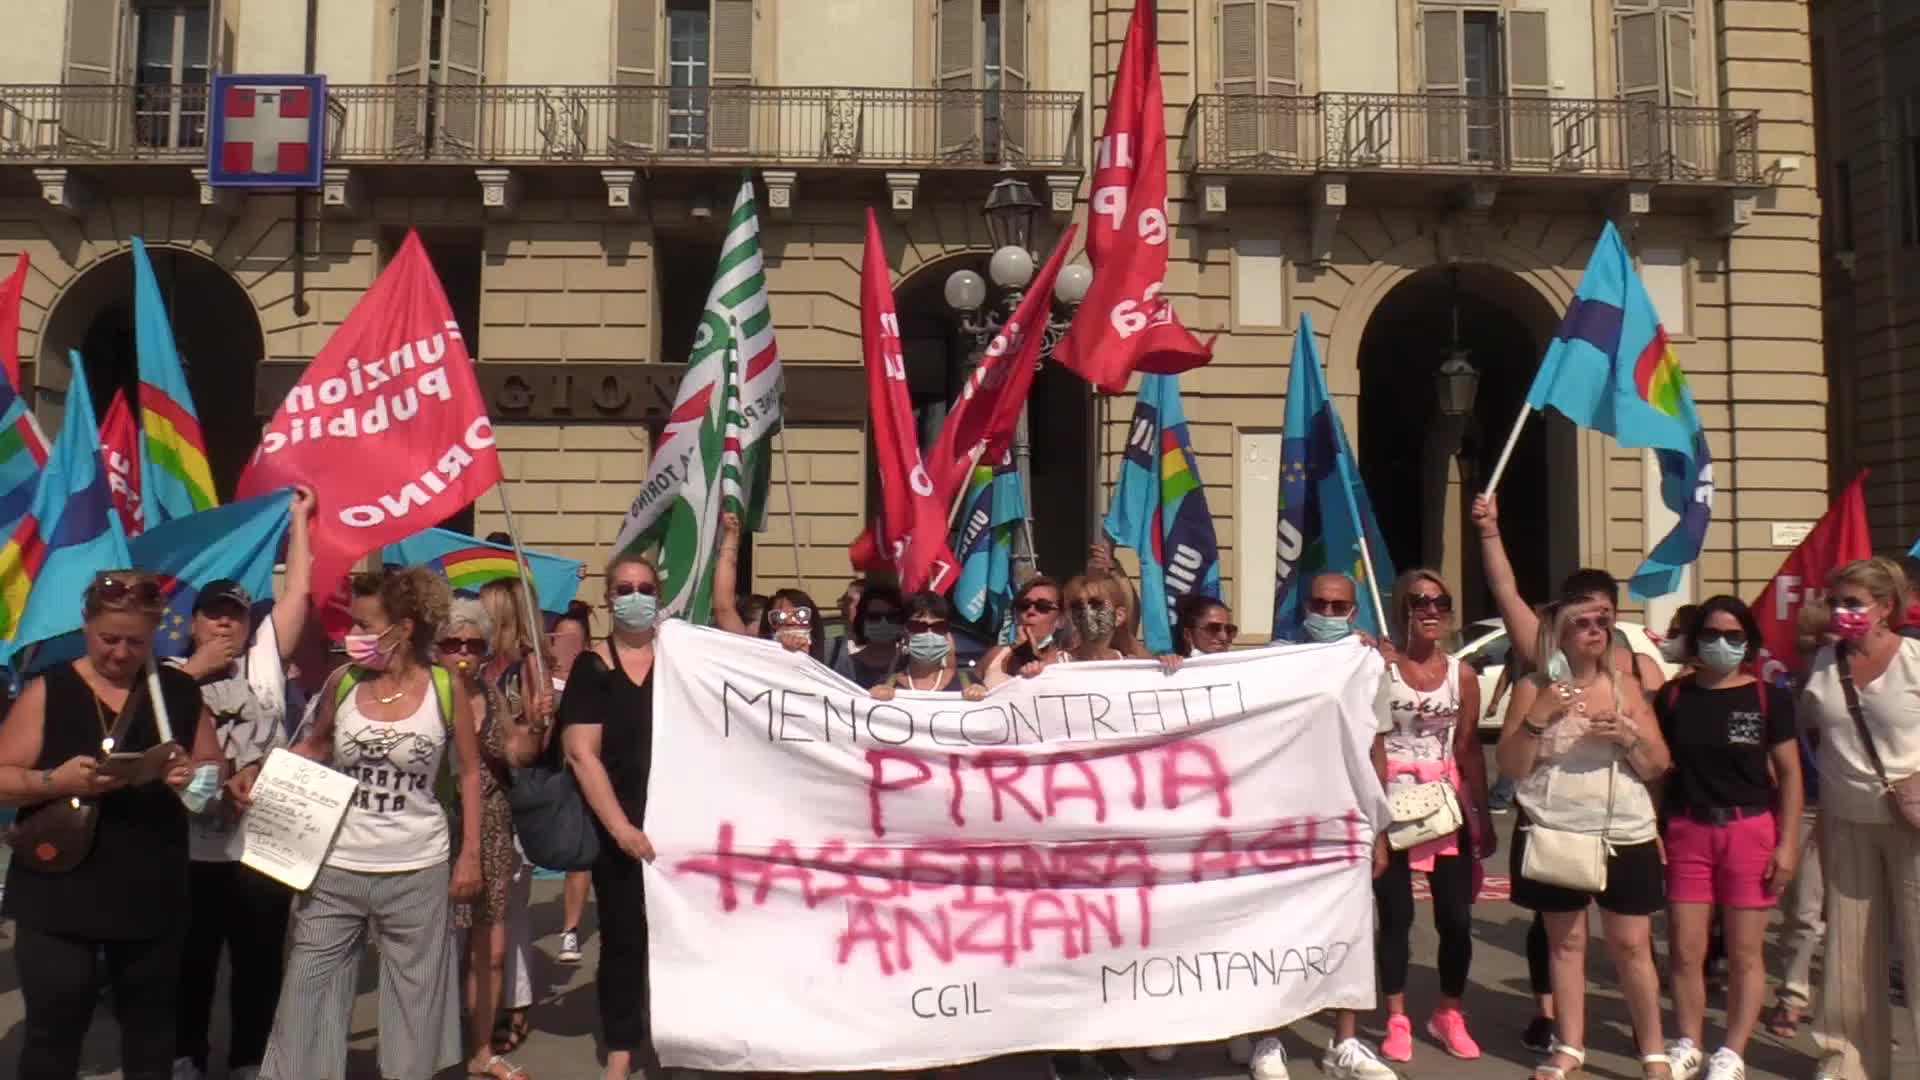 Torino, il grido di protesta delle oss: "Ci propongono contratti pirata"